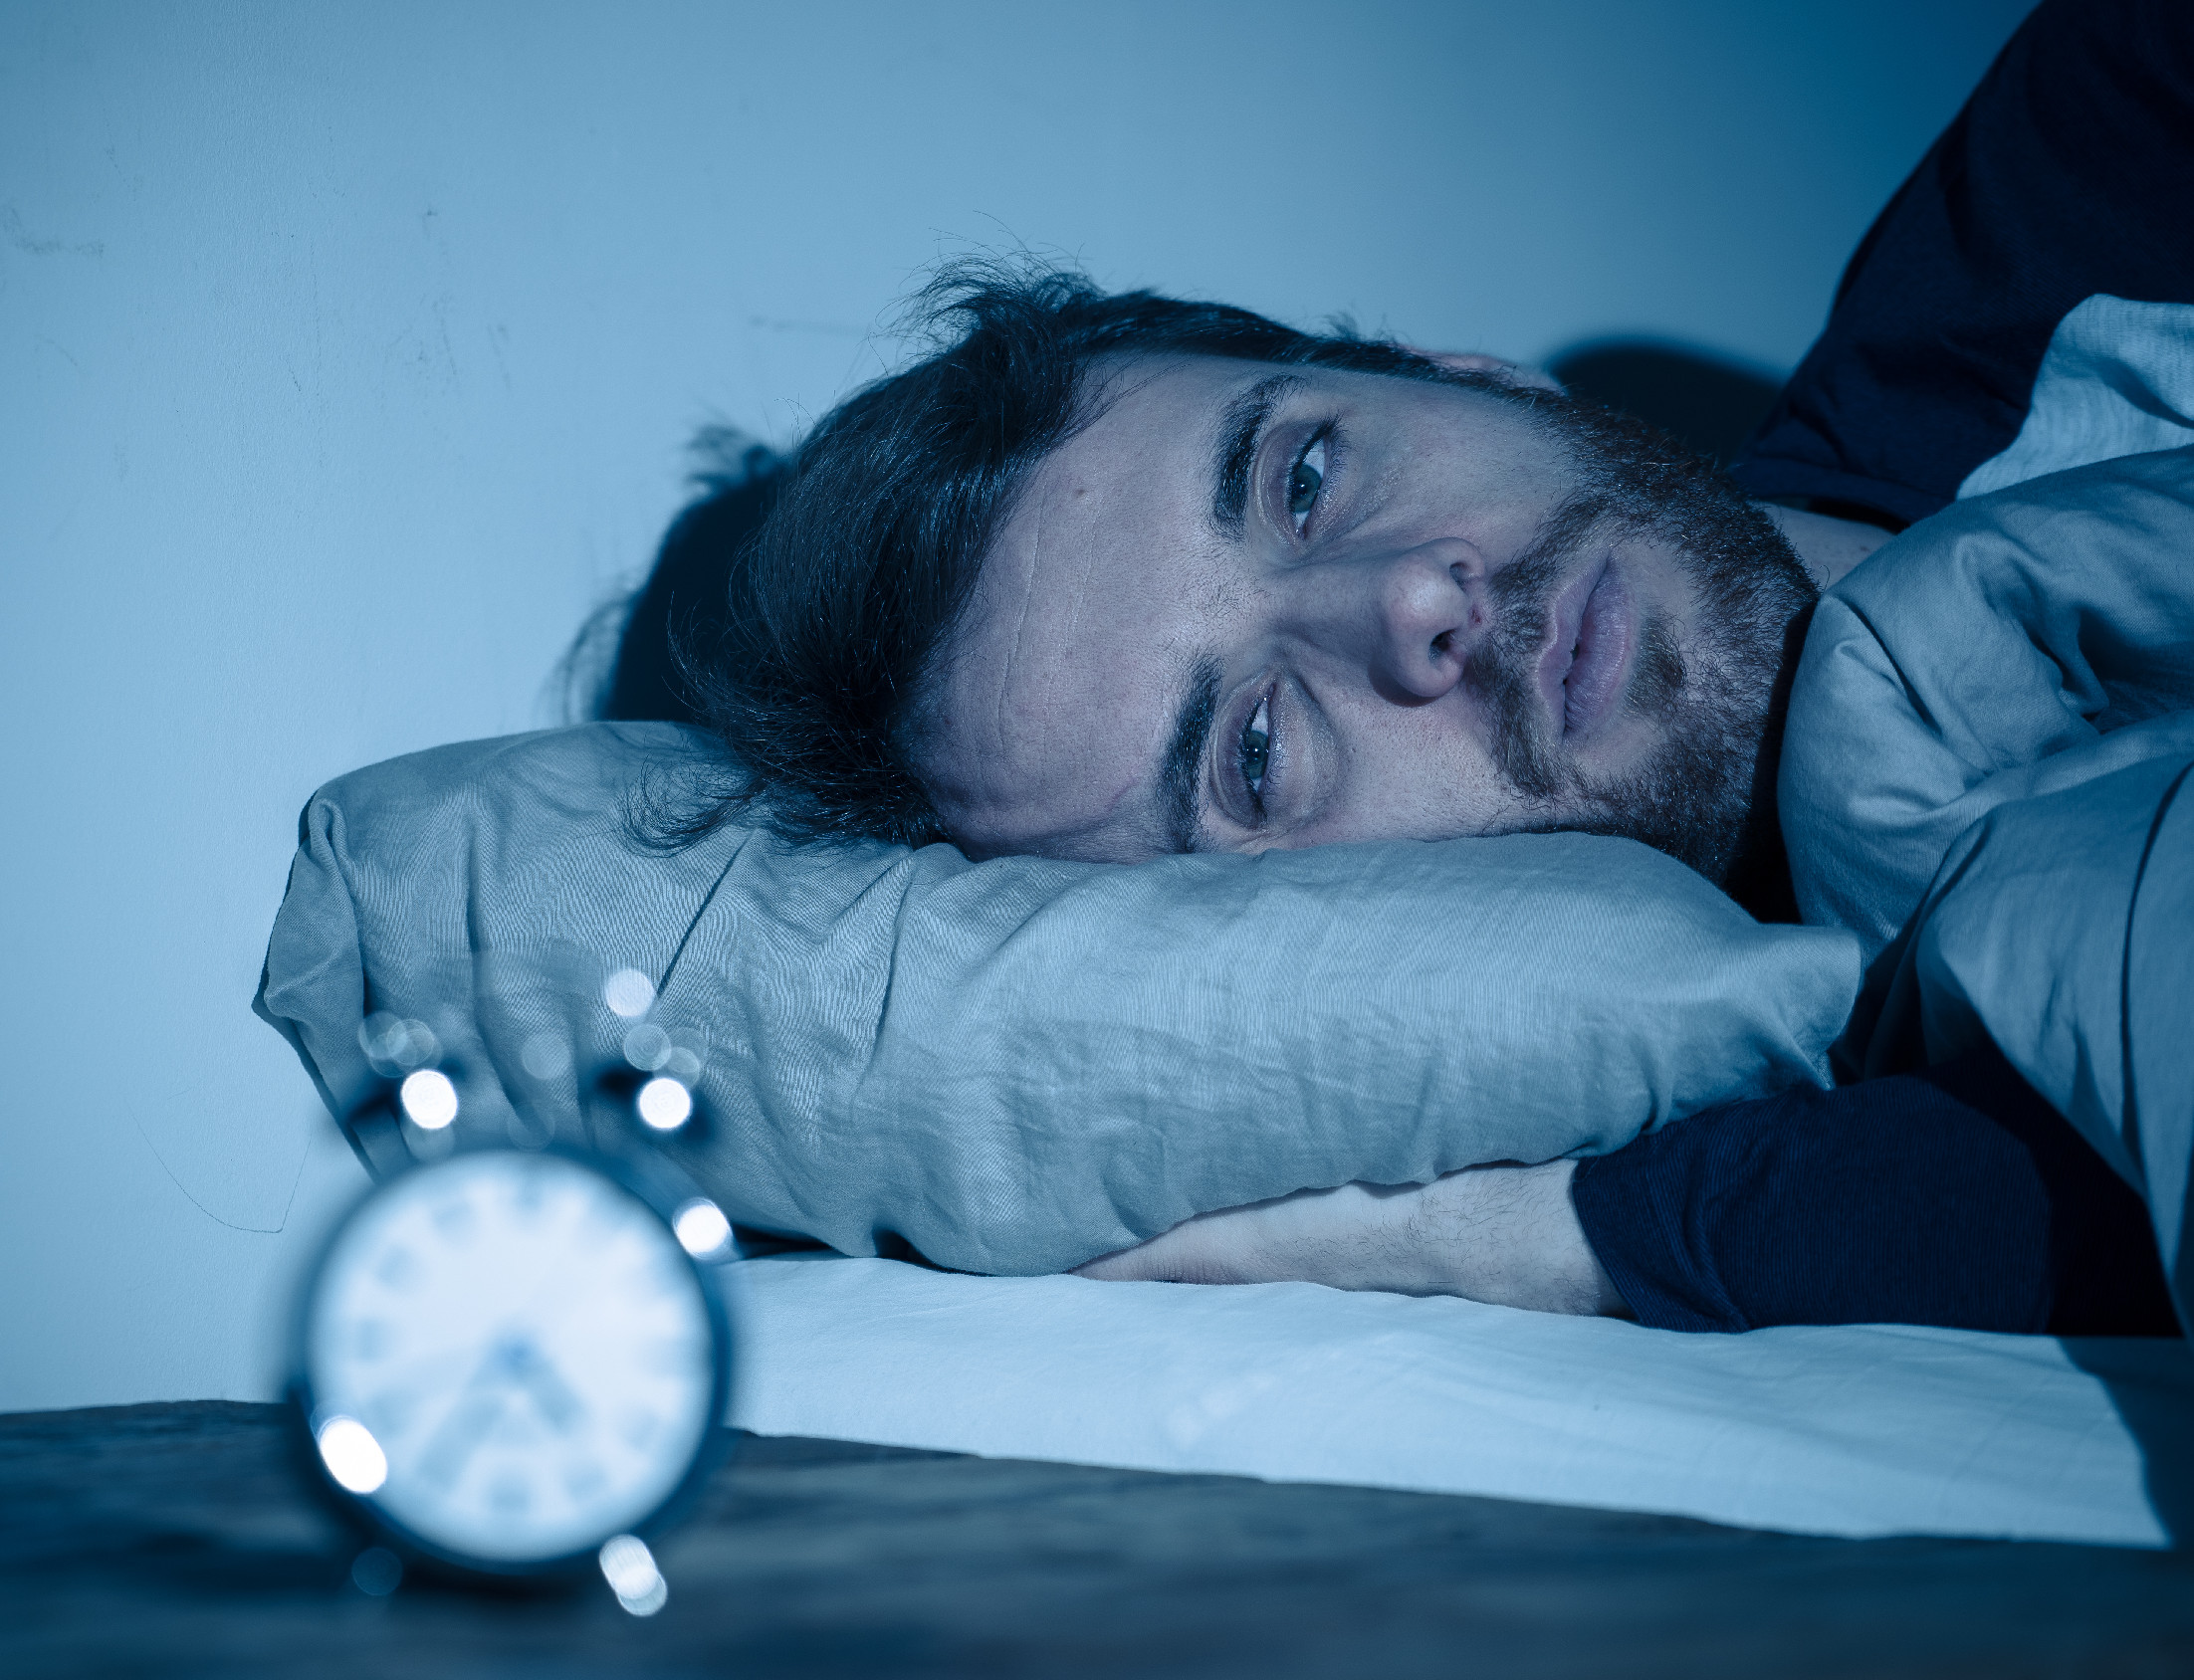 Romlottak az alvási mutatók – egyre kevesebbet alszunk 